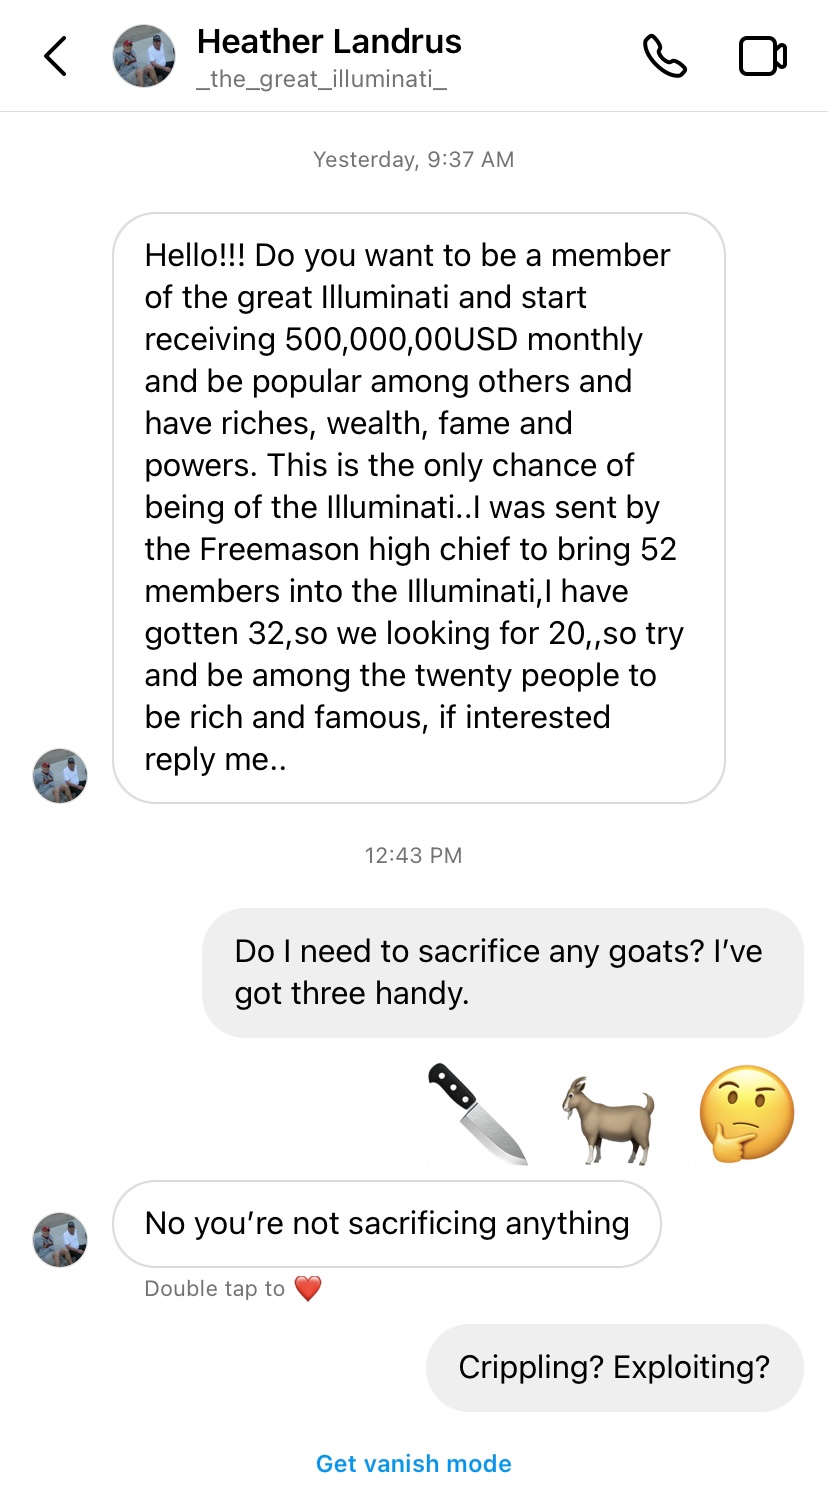 Do I need to sacrifice any goats?